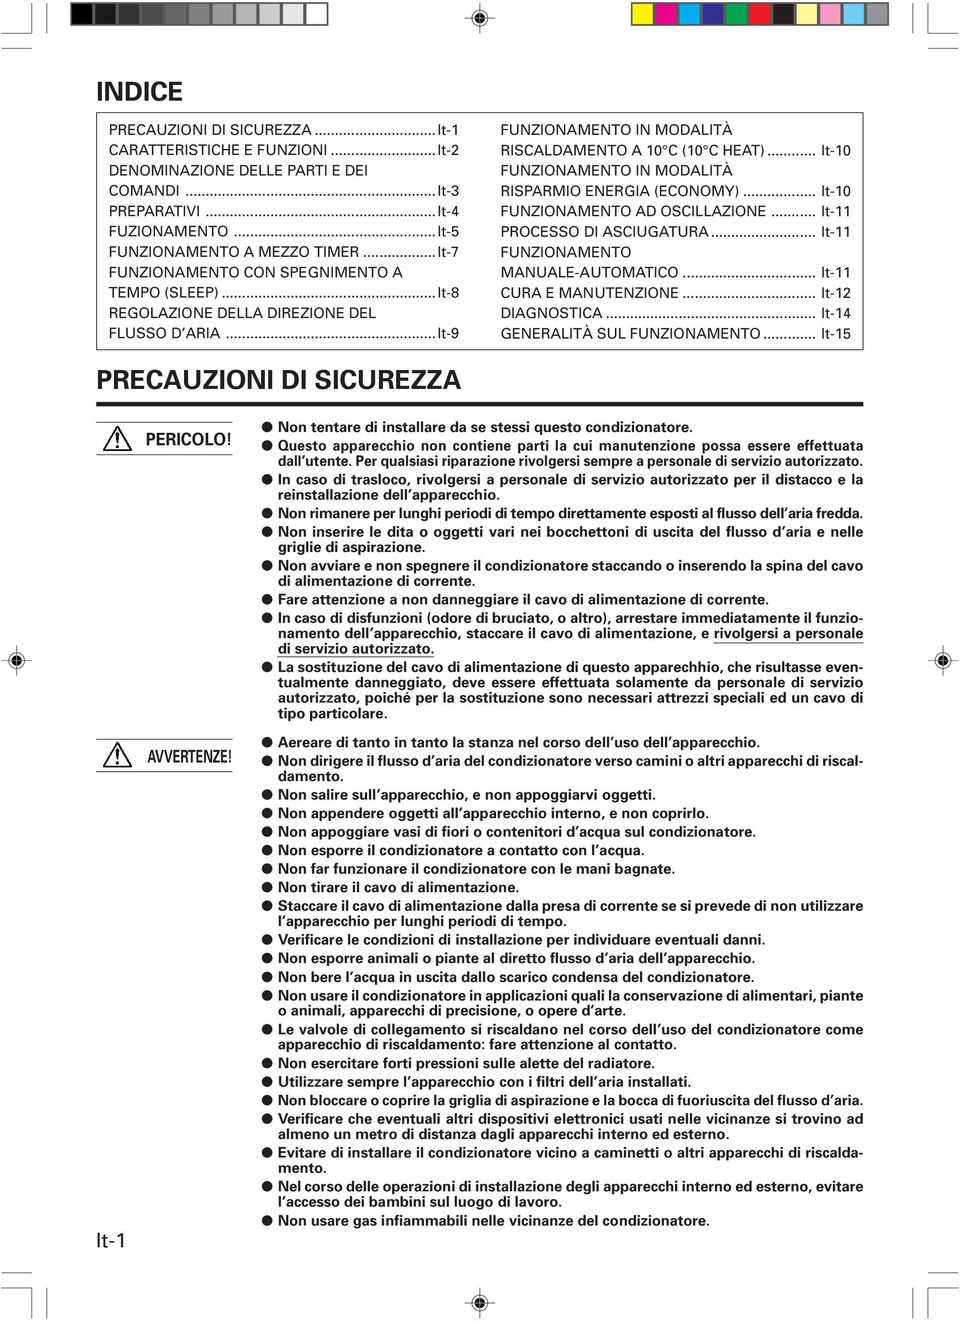 .. It-10 FUNZIONAMENTO IN MODALITÀ RISPARMIO ENERGIA (ECONOMY)... It-10 FUNZIONAMENTO AD OSCILLAZIONE... It-11 PROCESSO DI ASCIUGATURA... It-11 FUNZIONAMENTO MANUALE-AUTOMATICO.